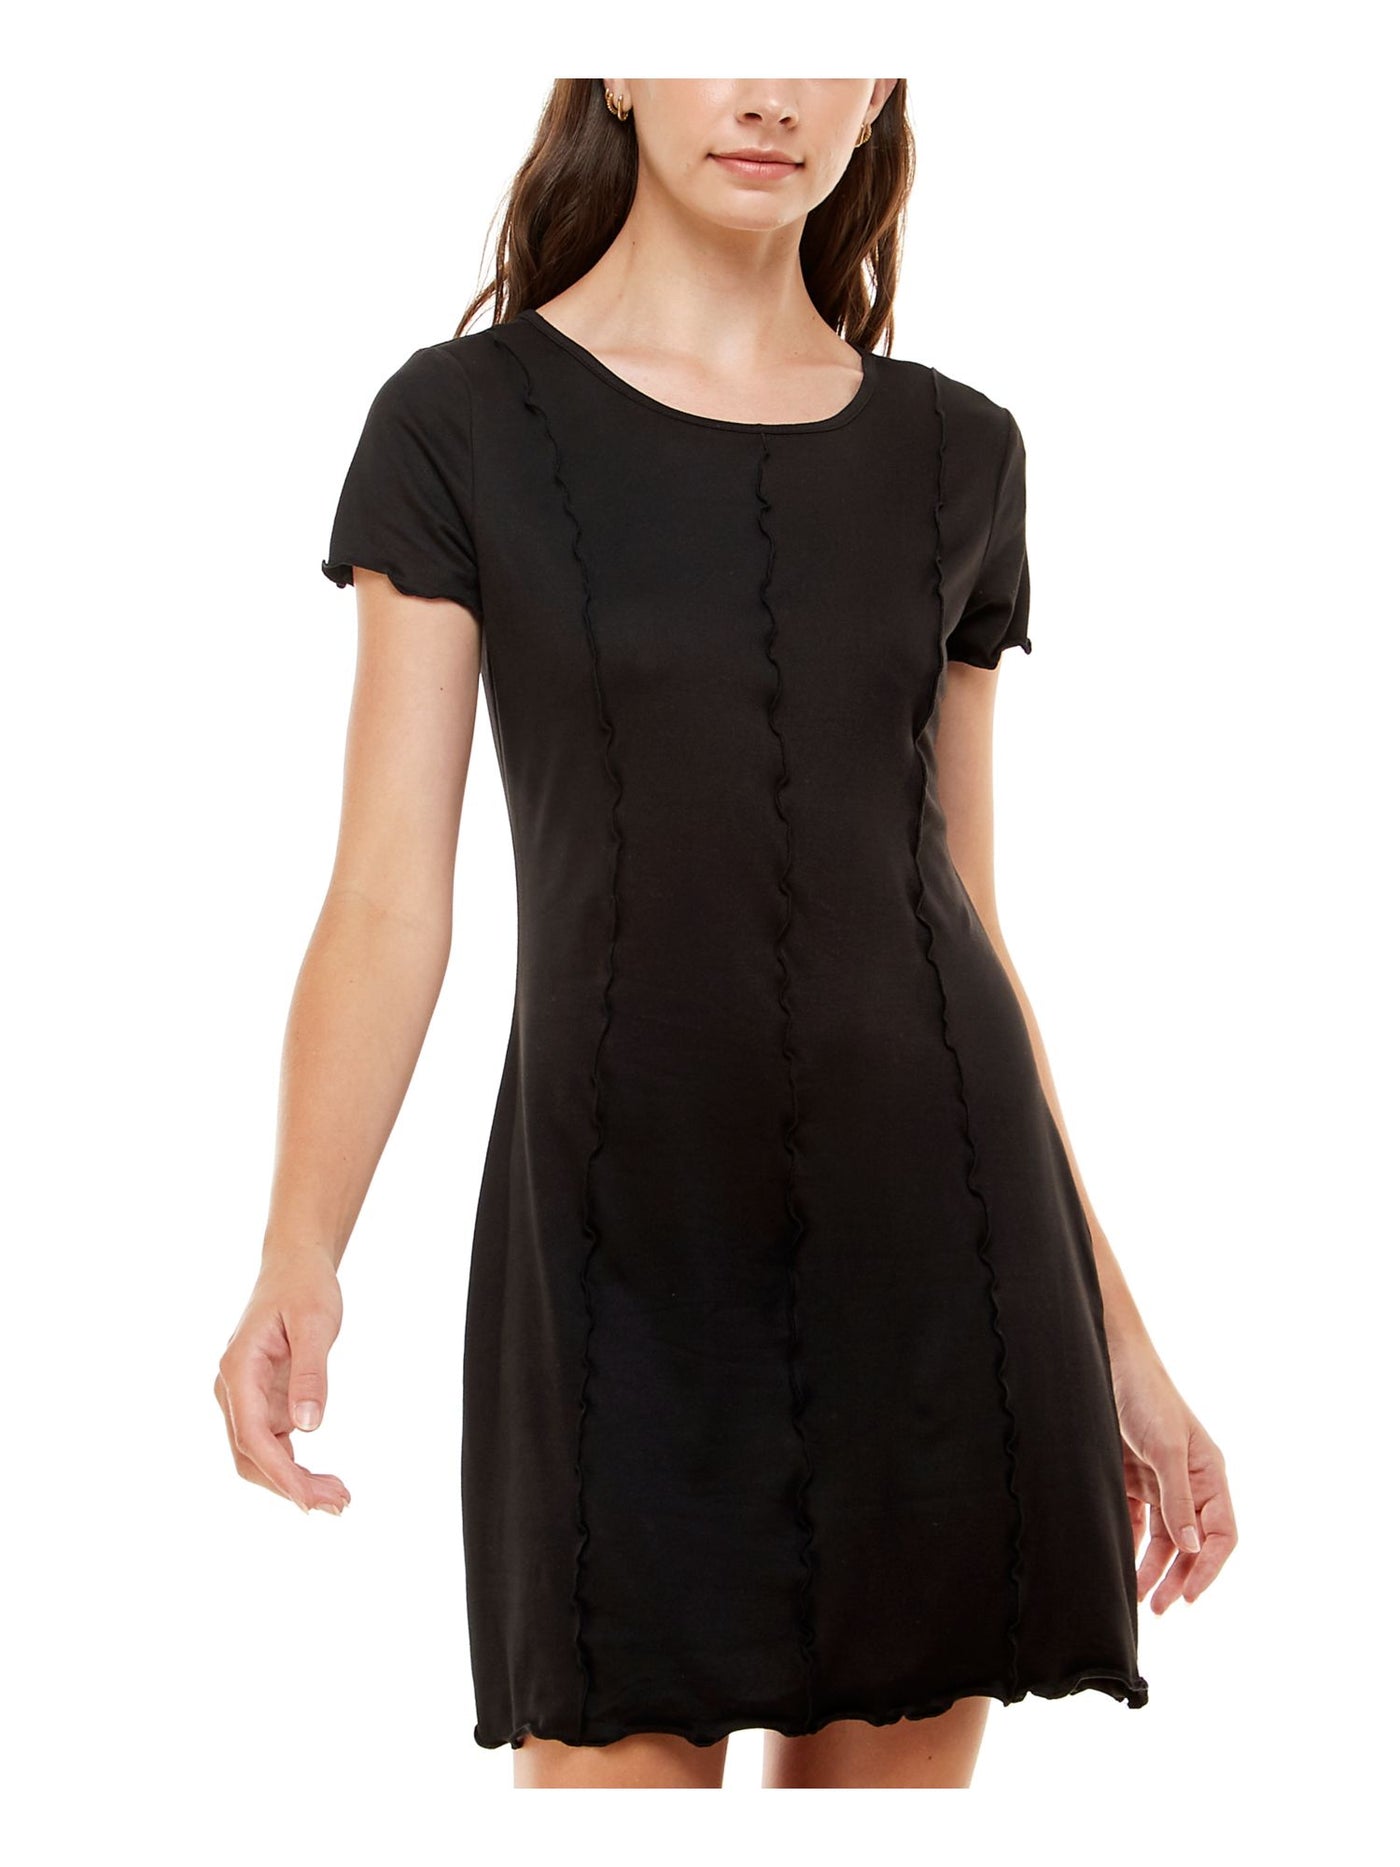 ULTRA FLIRT Womens Black Stretch Short Sleeve Scoop Neck Short Shift Dress Juniors M